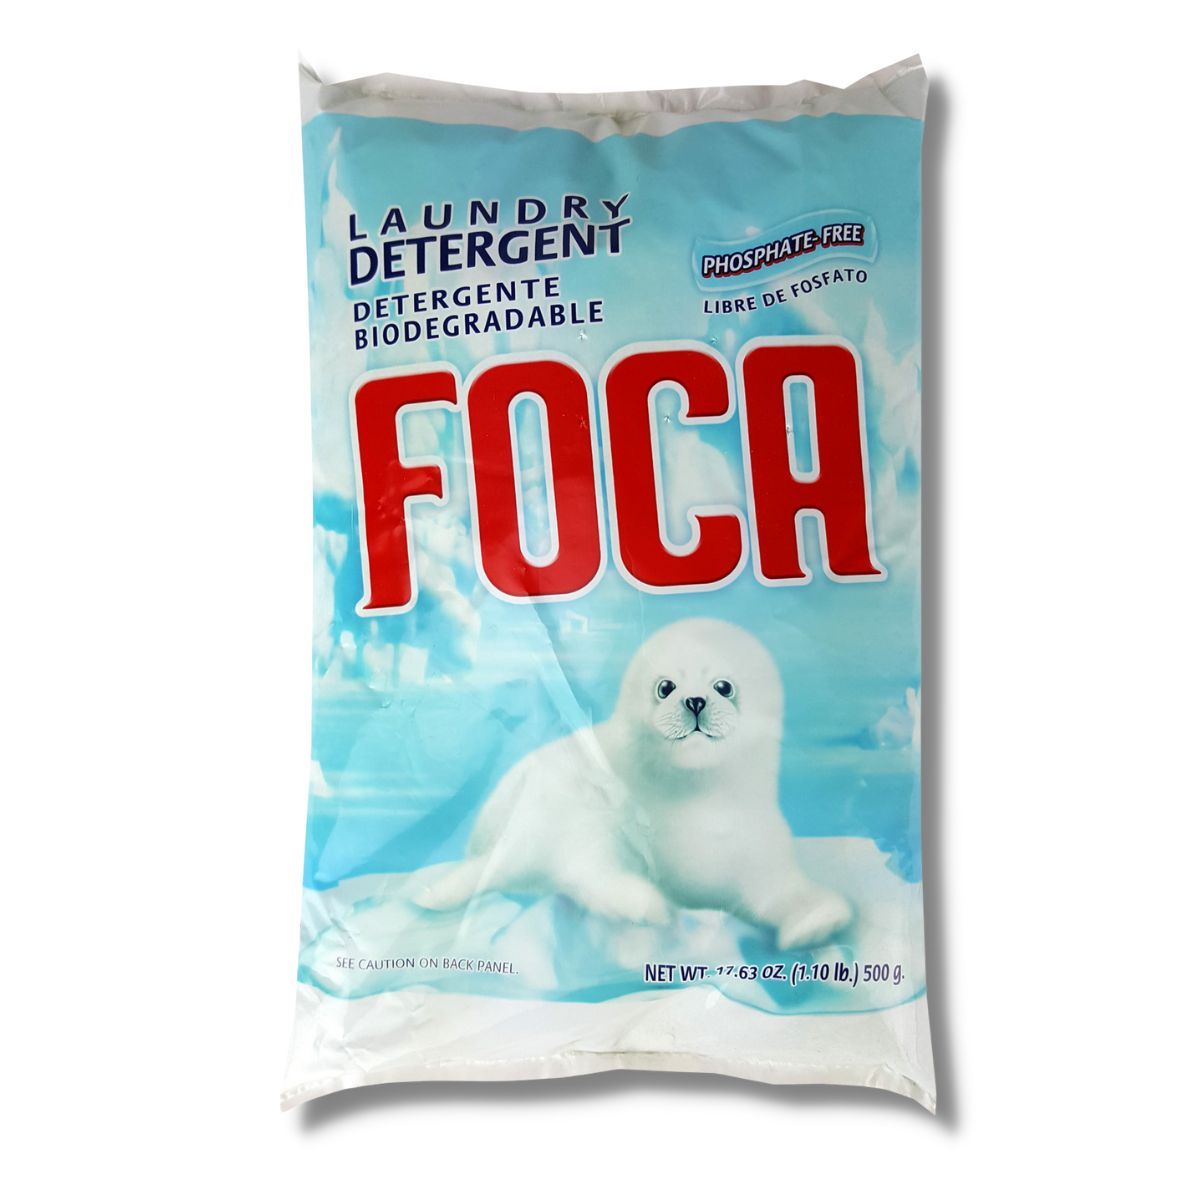 Foca - Powder Laundry Detergent, 500g - Case of 36